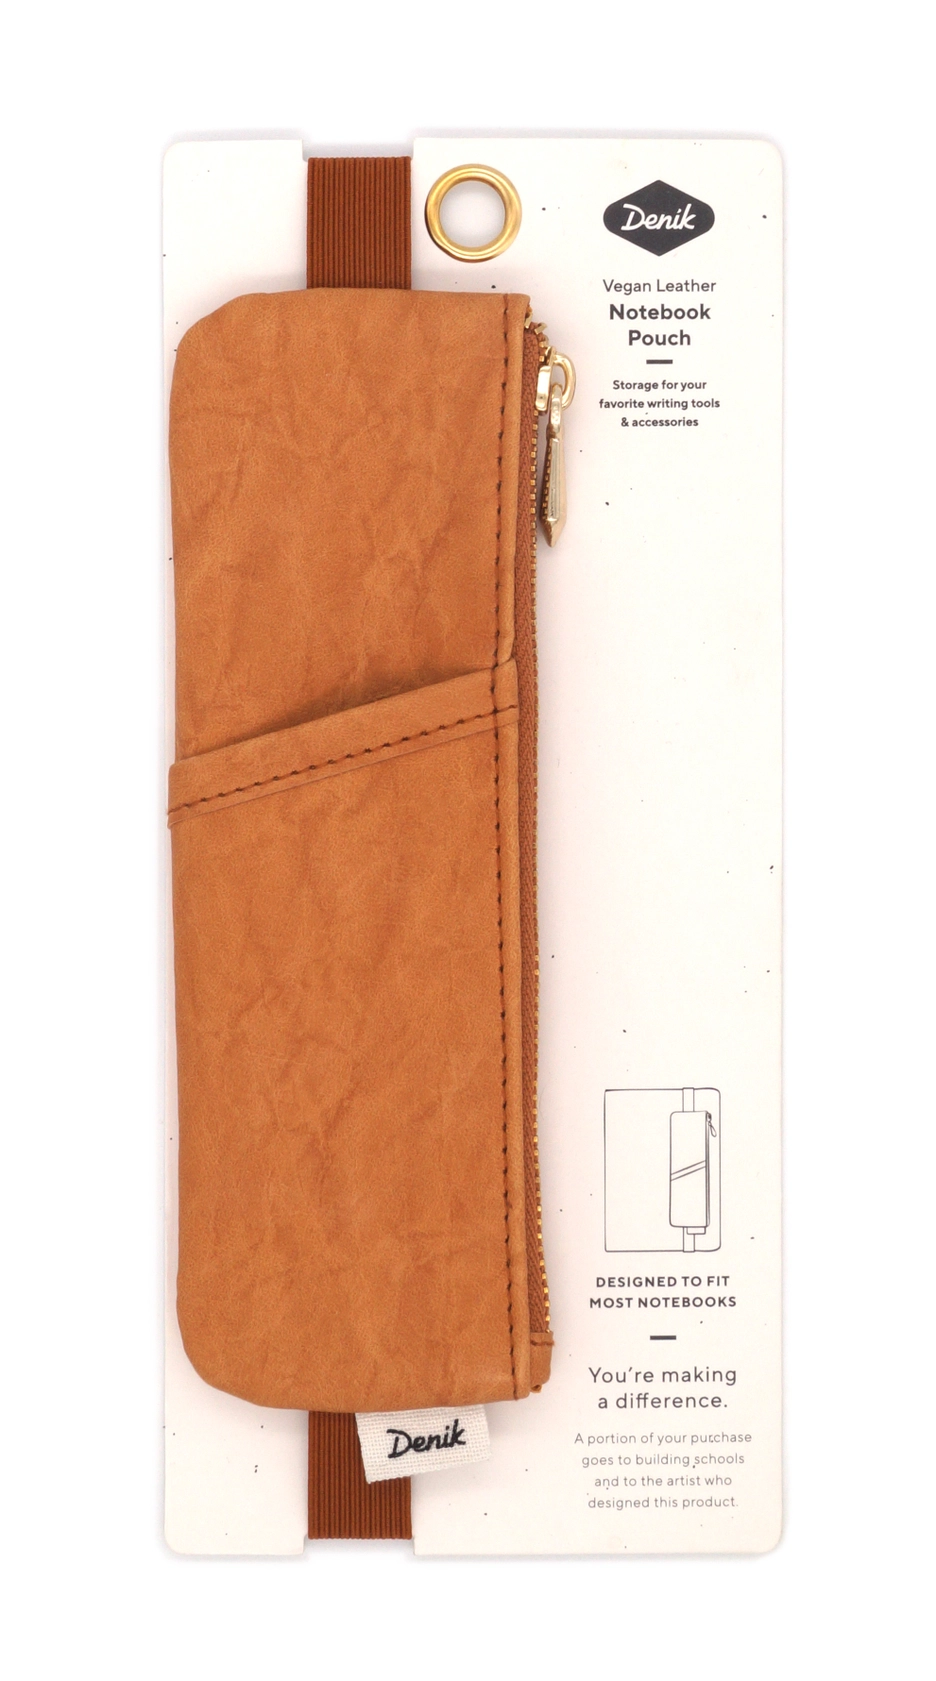 caramel pen pencil notebook journal pouch